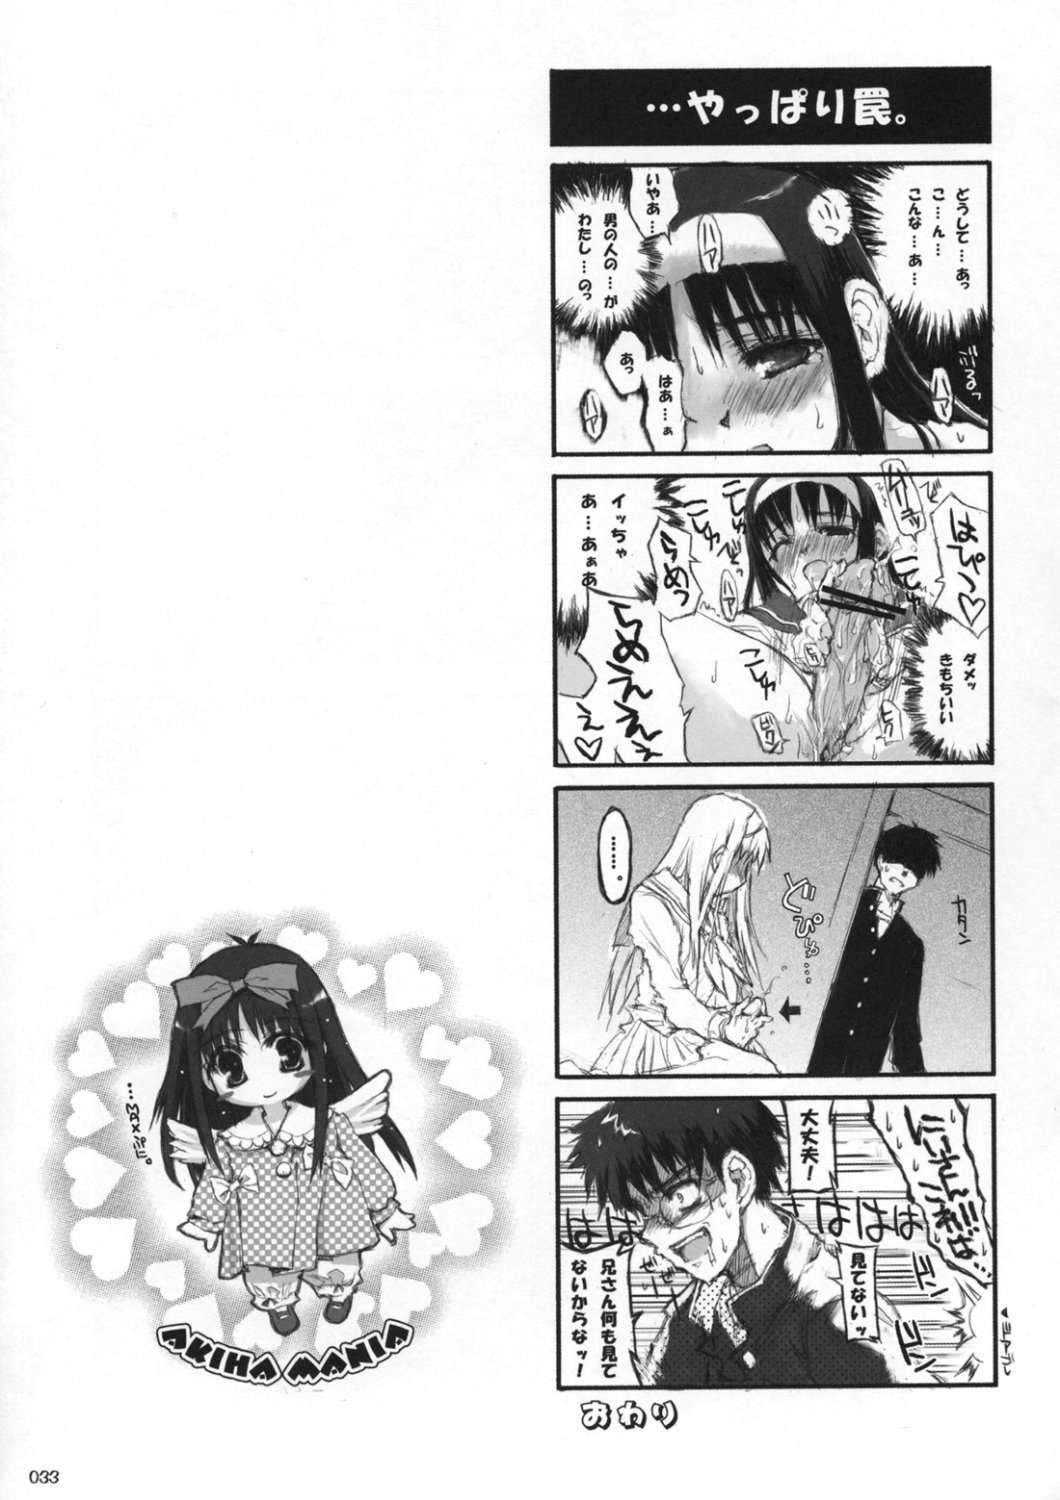 [Inochi no Furusato, Neko-bus Tei, Zangyaku Koui Teate] Akihamania [AKIHA MANIACS] (Tsukihime) page 32 full